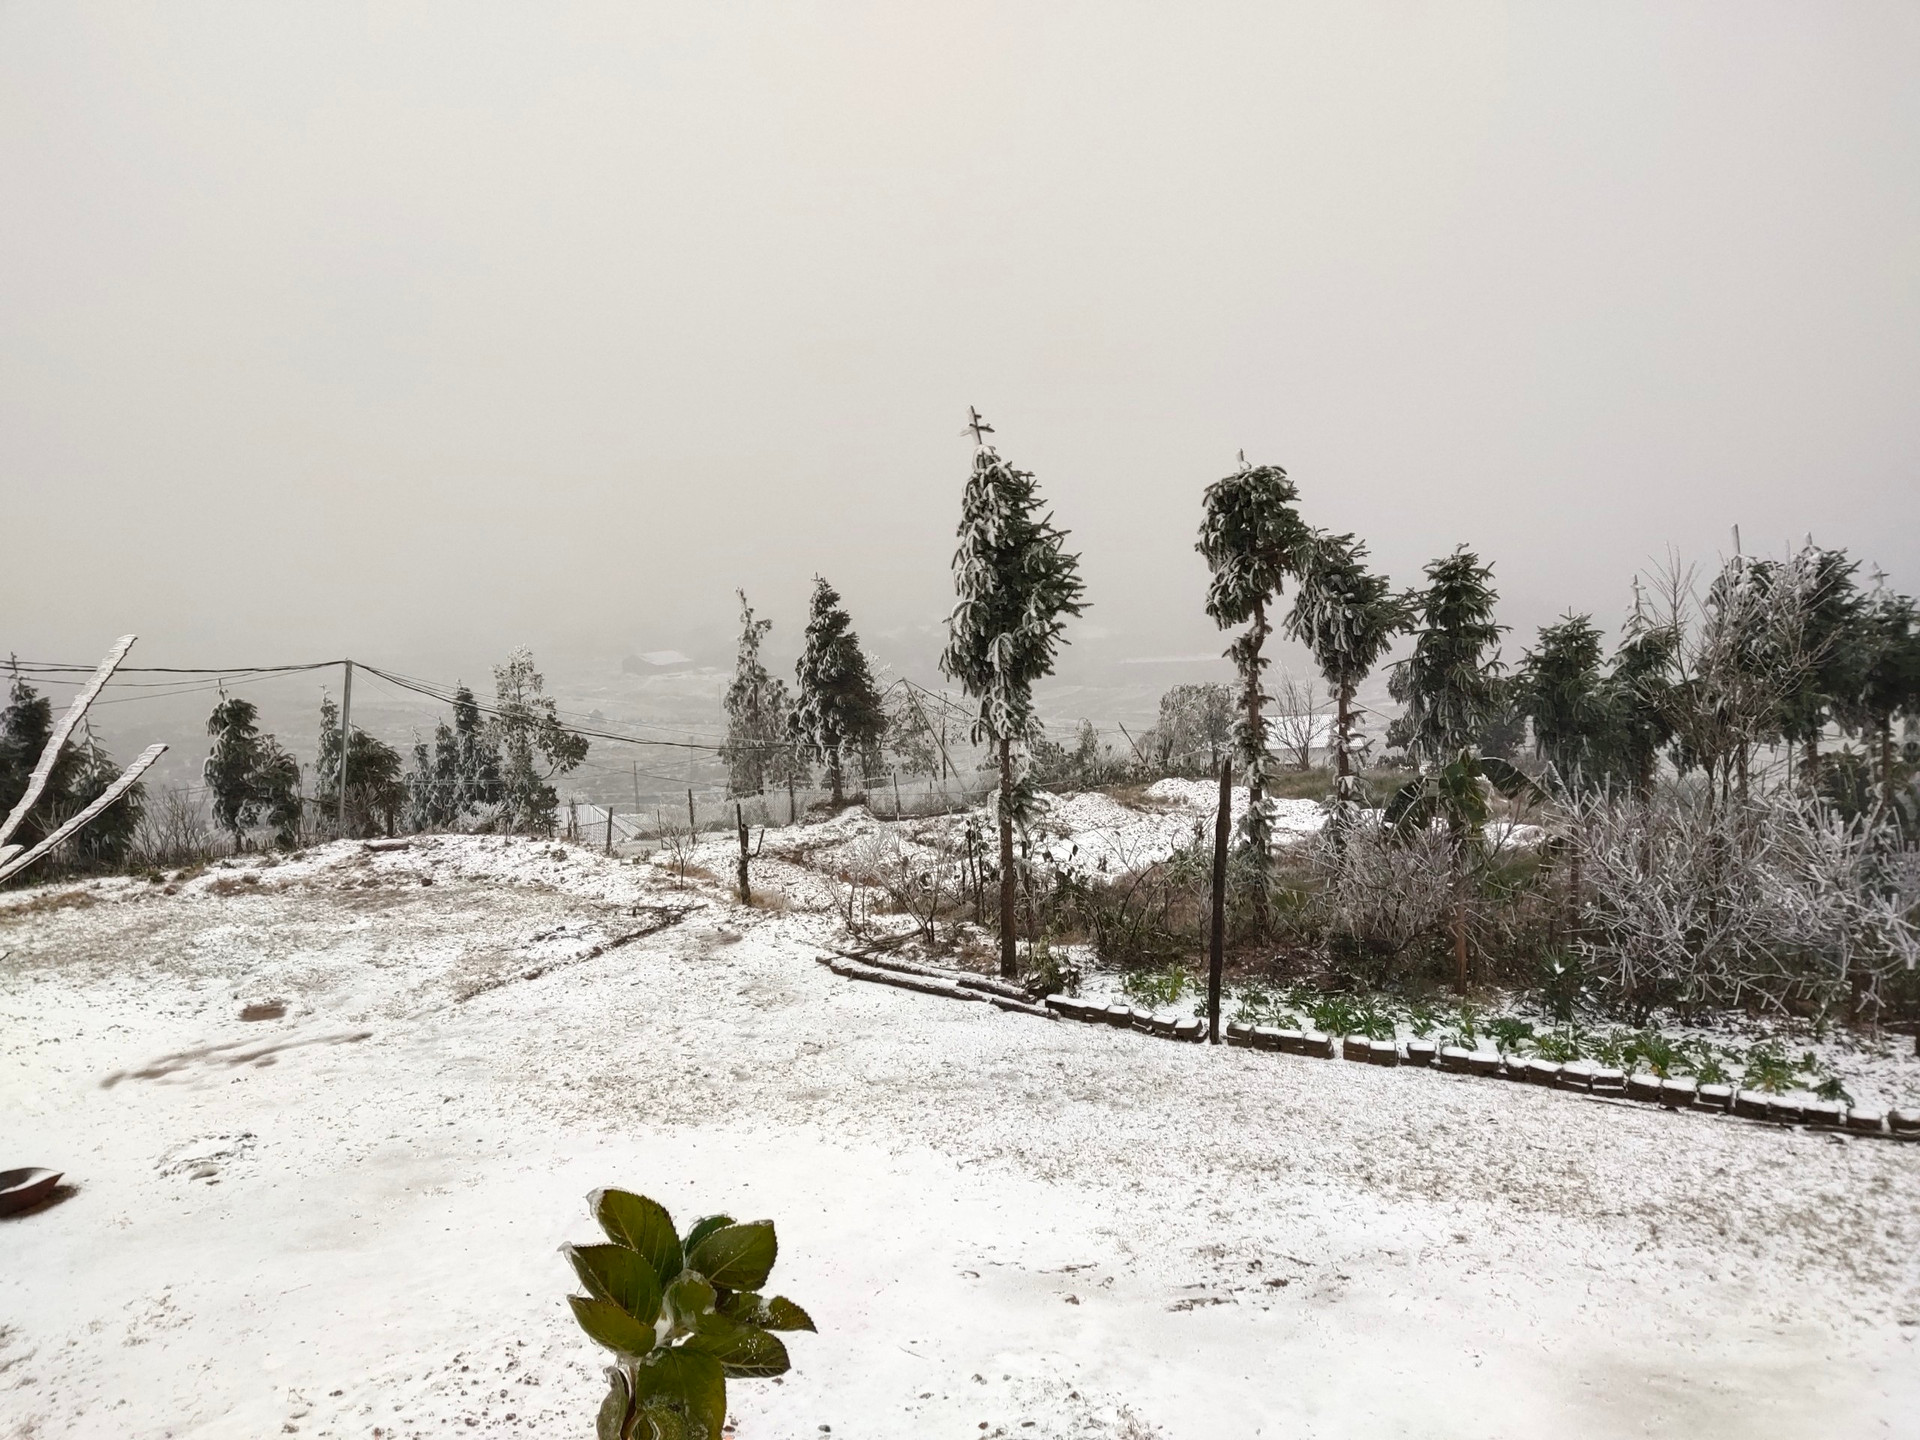 Nhiều thôn ở xã Y Tý tuyết rơi trắng xóa như: Mò Phú chải, Phìn Hồ, Trung Chải, Phan Cán Sử...